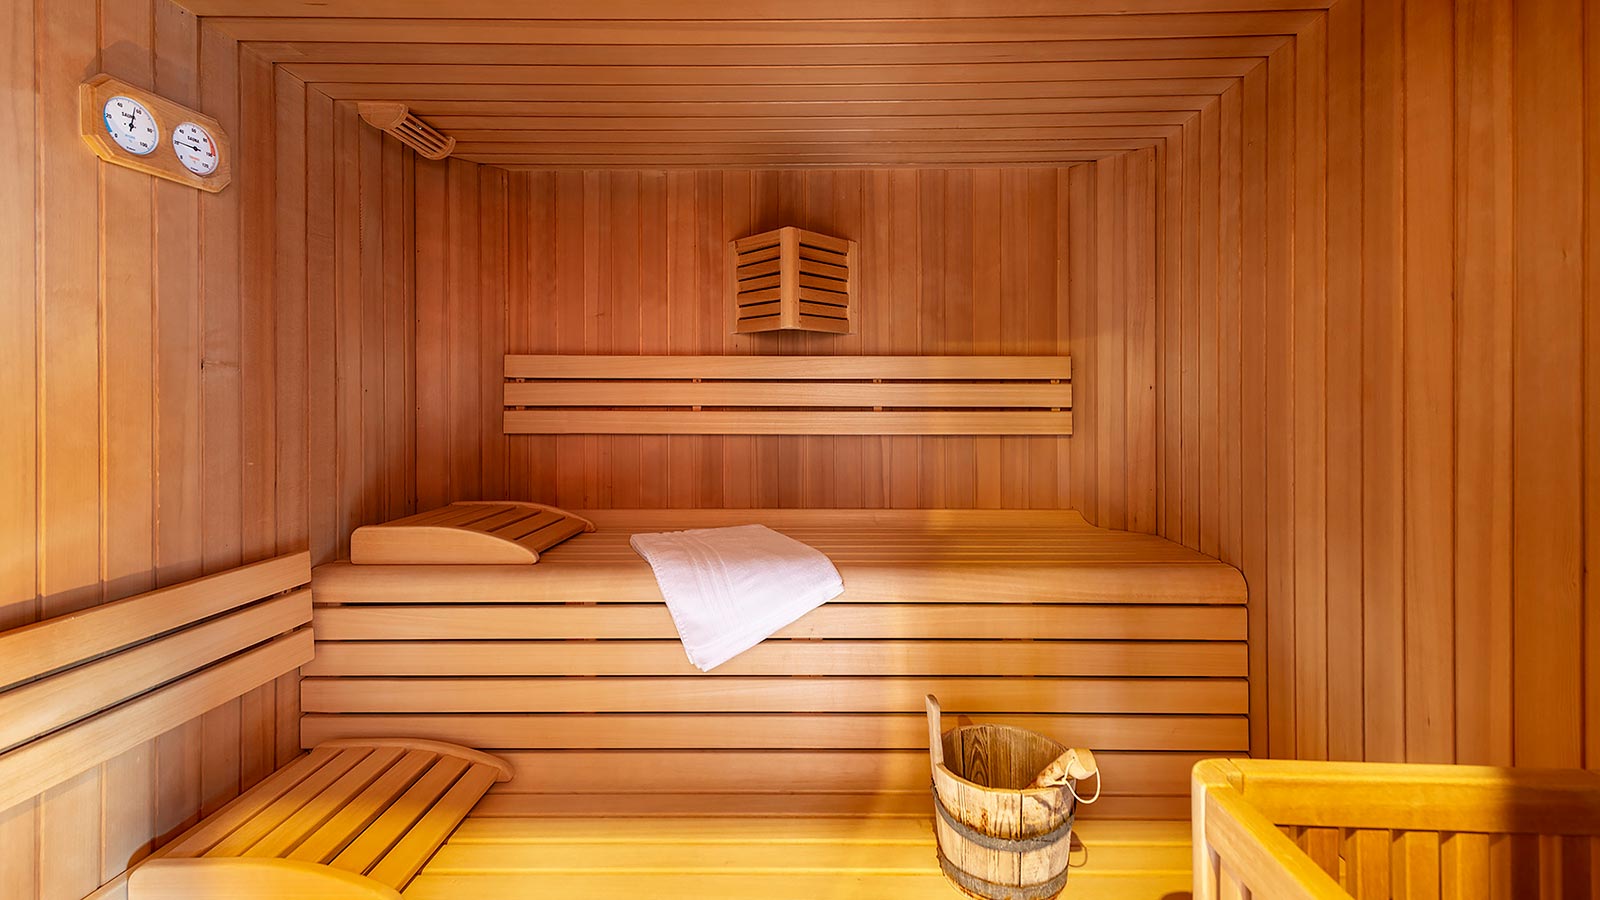 Dettaglio della sauna finlandese presso l'area benessere ad Andalo